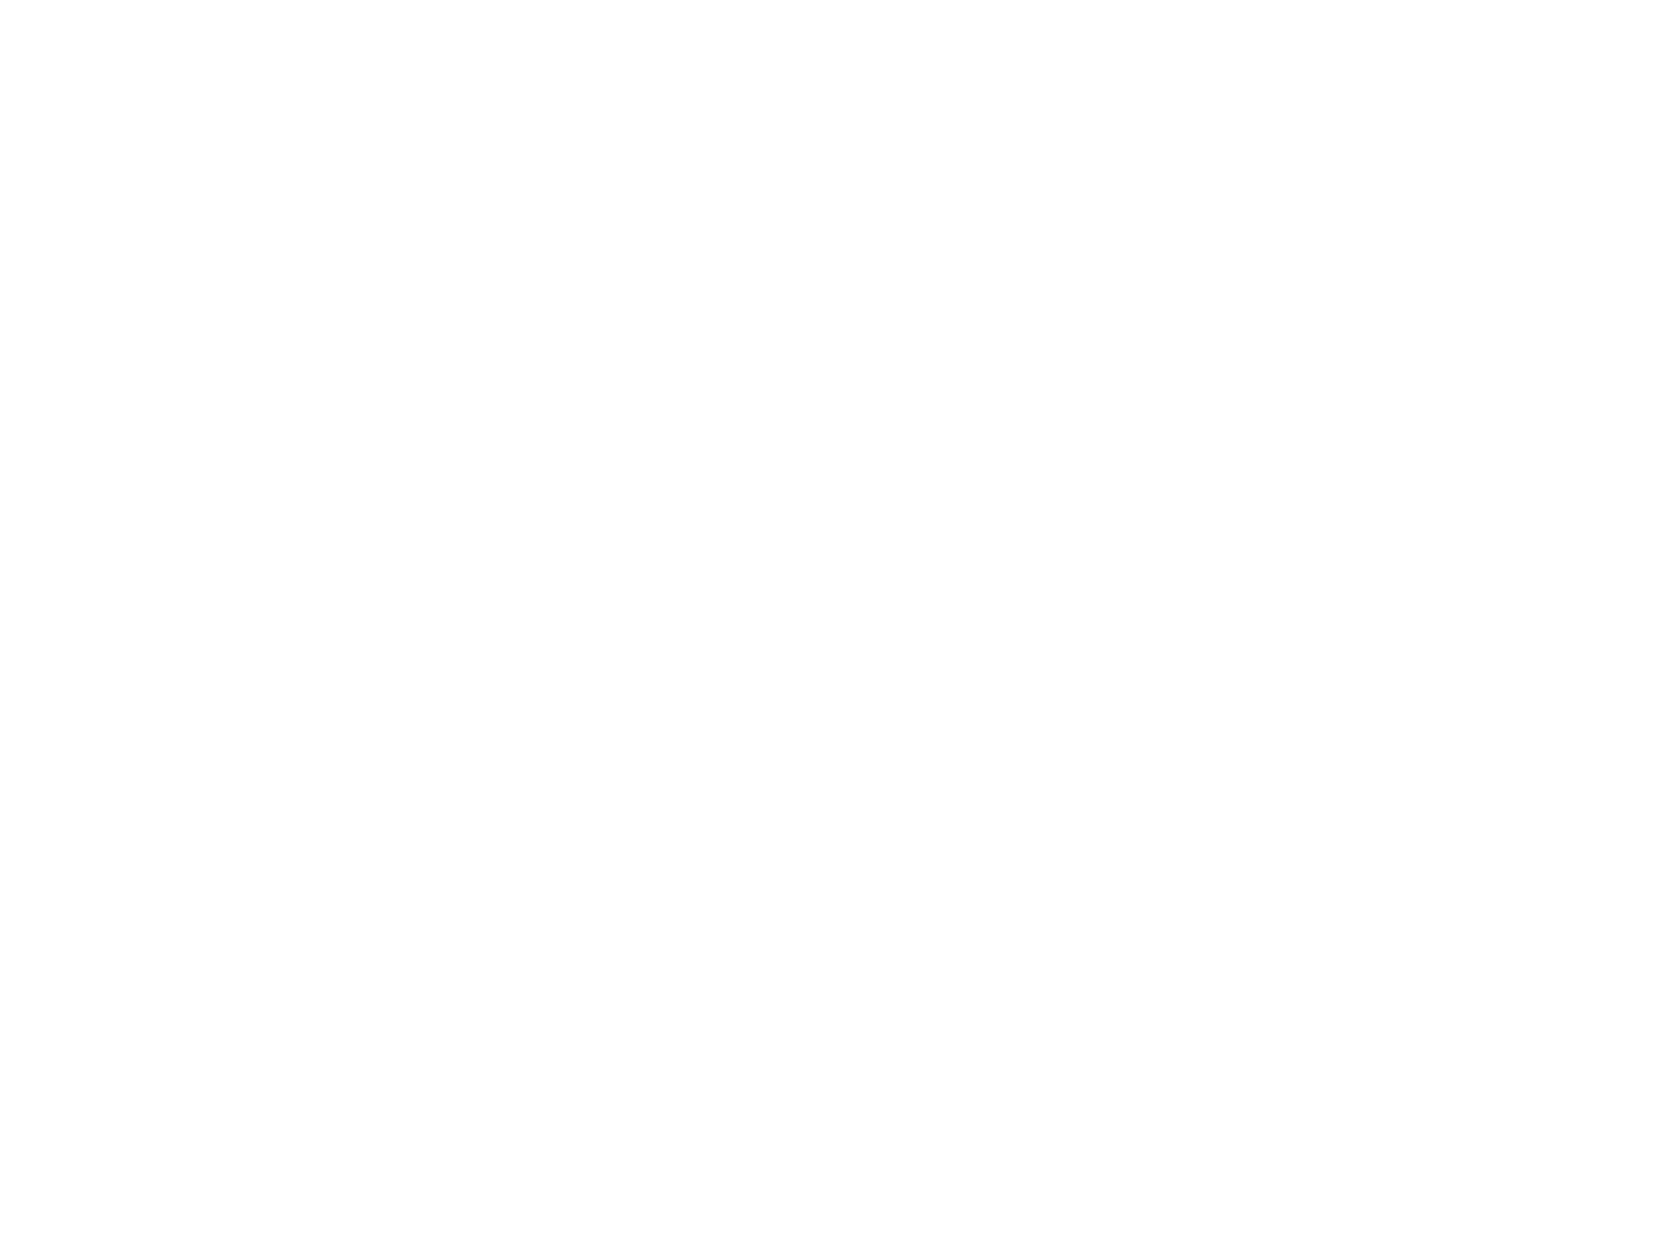 Индивидуальный тепловой пункт по адресу: г. Владимир, ул. Василисина, д. 13 Автоматизированный индивидуальный тепловой пункт с независимой системой отопления и двуступенчатой схемой присоединения пластинчатых теплообменных аппаратов ГВС